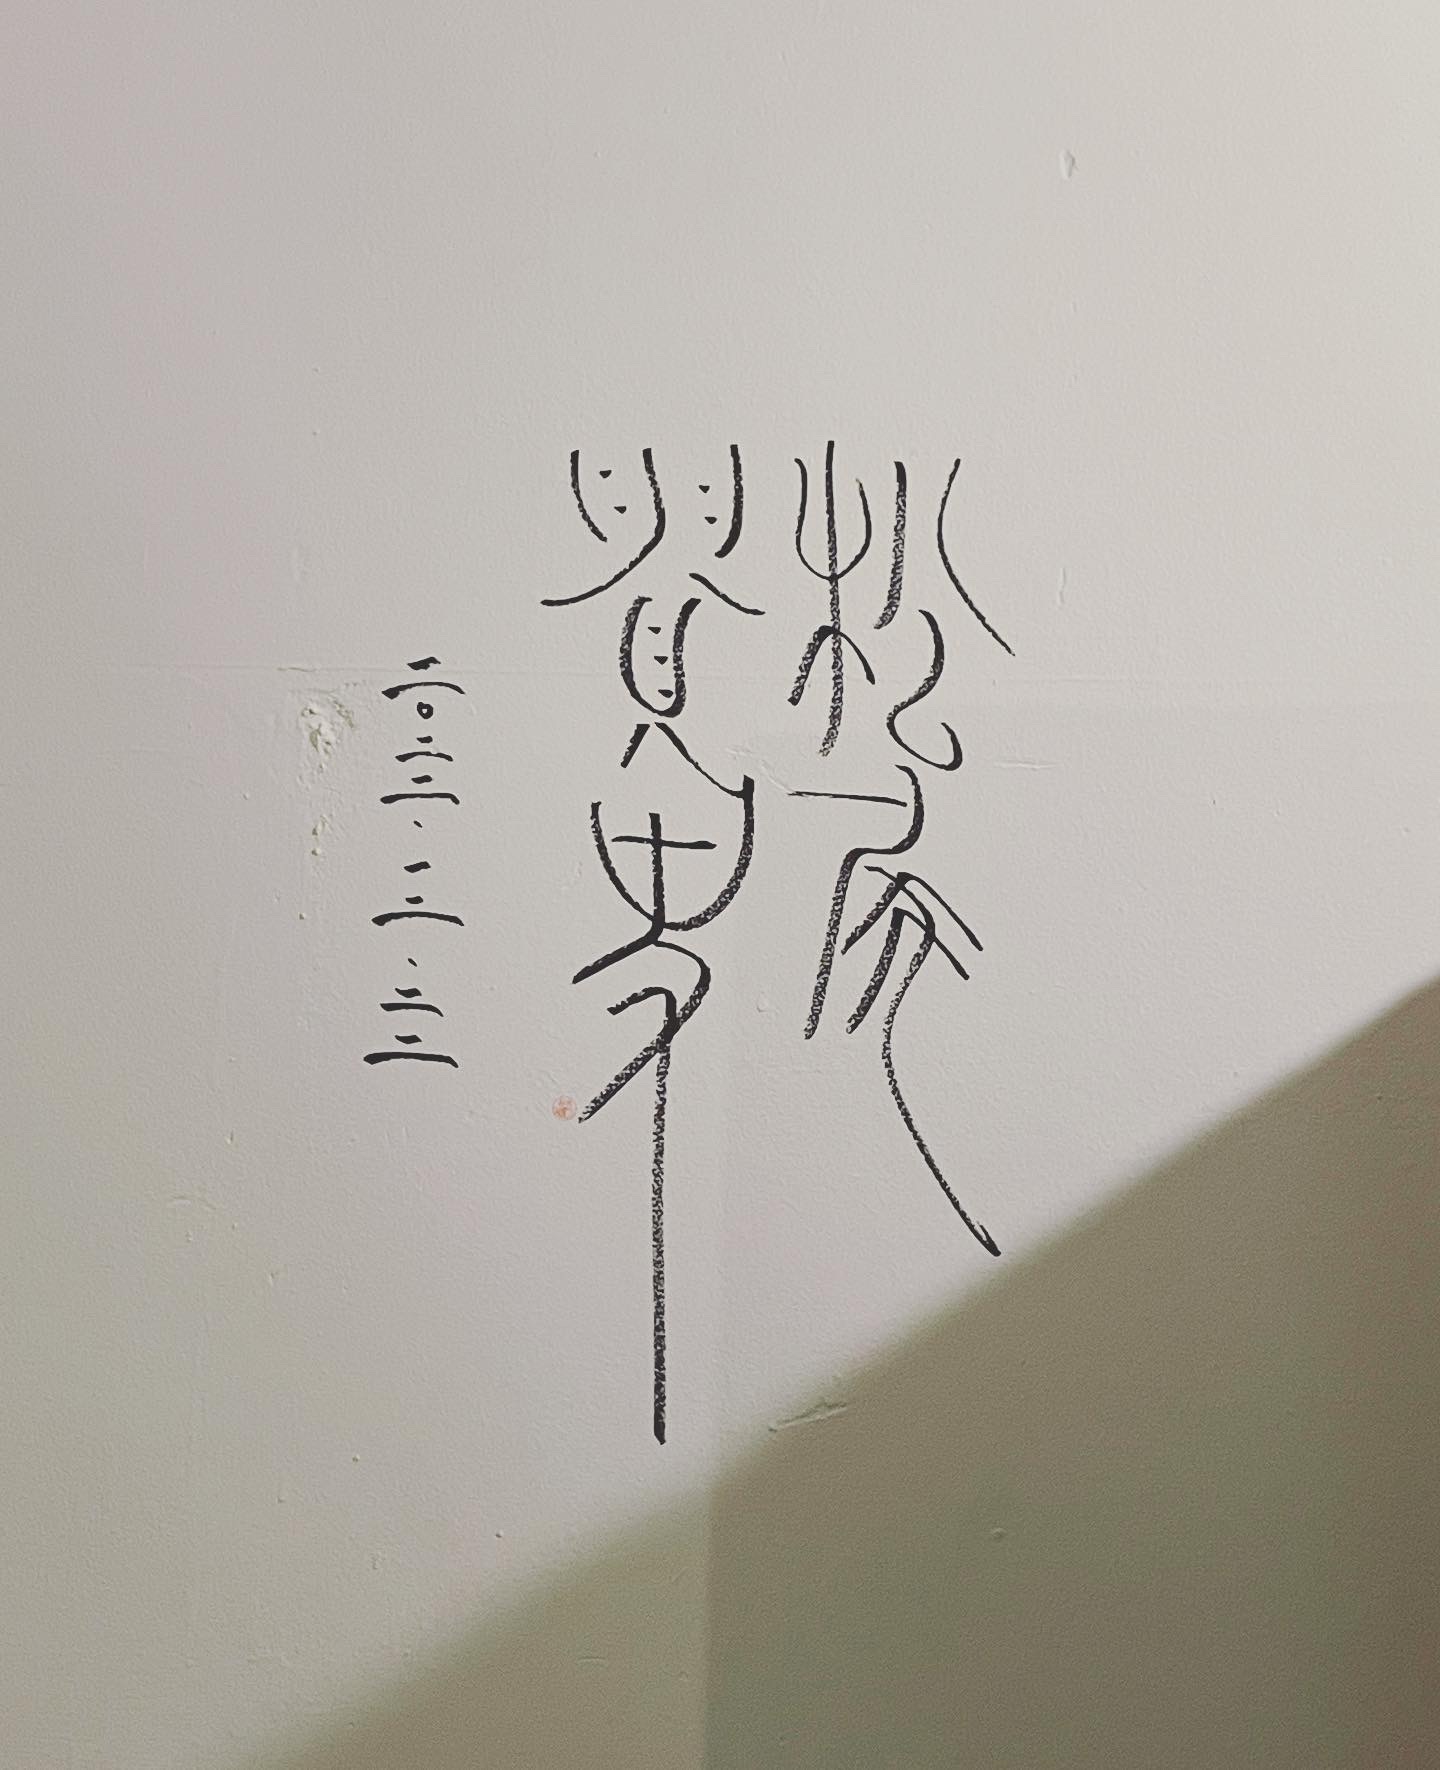 <p>テレビ大阪さんで本日放送された 『片っ端から喫茶店』で kaicocaféが紹介されました。 松尾貴史さんが来られ、蔵で昭和仕立てのプリンとkaicoオリジナルブレンド珈琲を召し上がられました。 蔵の壁にサインも書いてくださいました。 今回紹介された、昭和仕立てのプリンは、 口当たりのなめらかさにこだわり焼き上げたkaicocafé自慢のスイーツです。 kaicoオリジナルブレンド珈琲ともよく合い […]</p>
